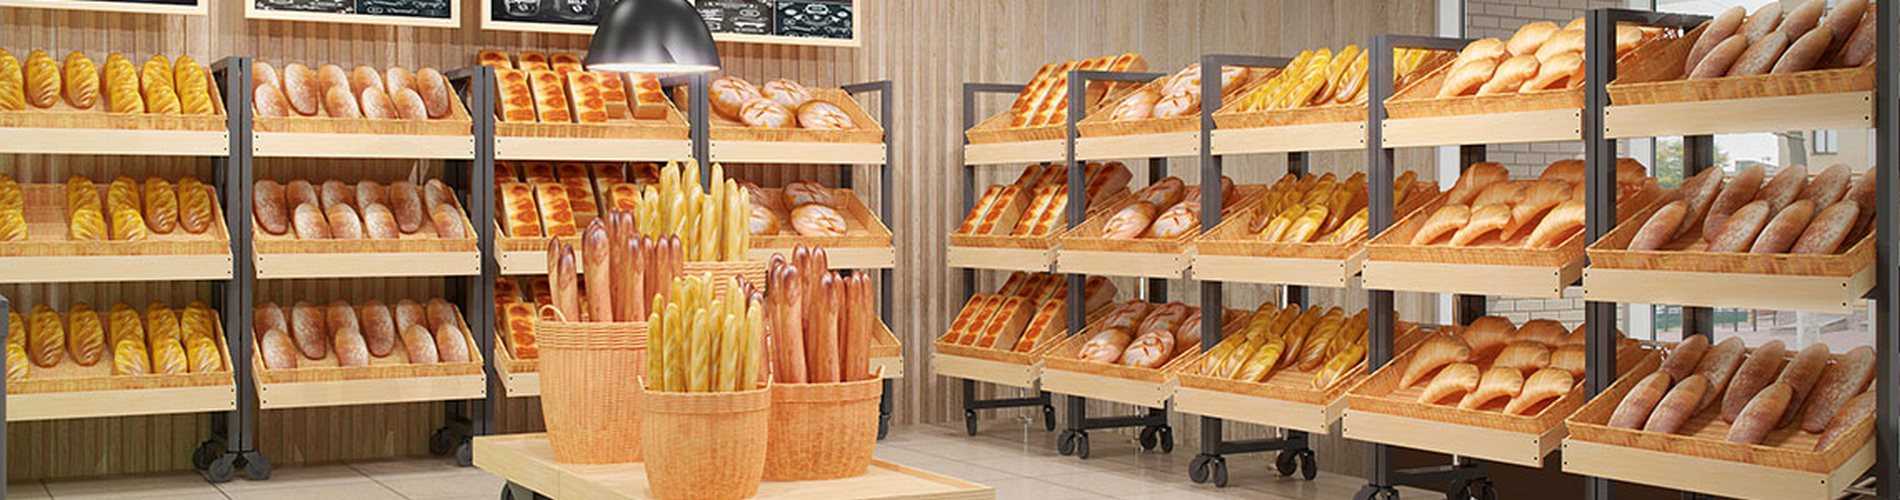 Производительность предприятий, выпекающих хлебобулочное продовольствие, определяется числом и мощностью смонтированного специализированного печного оборудования.